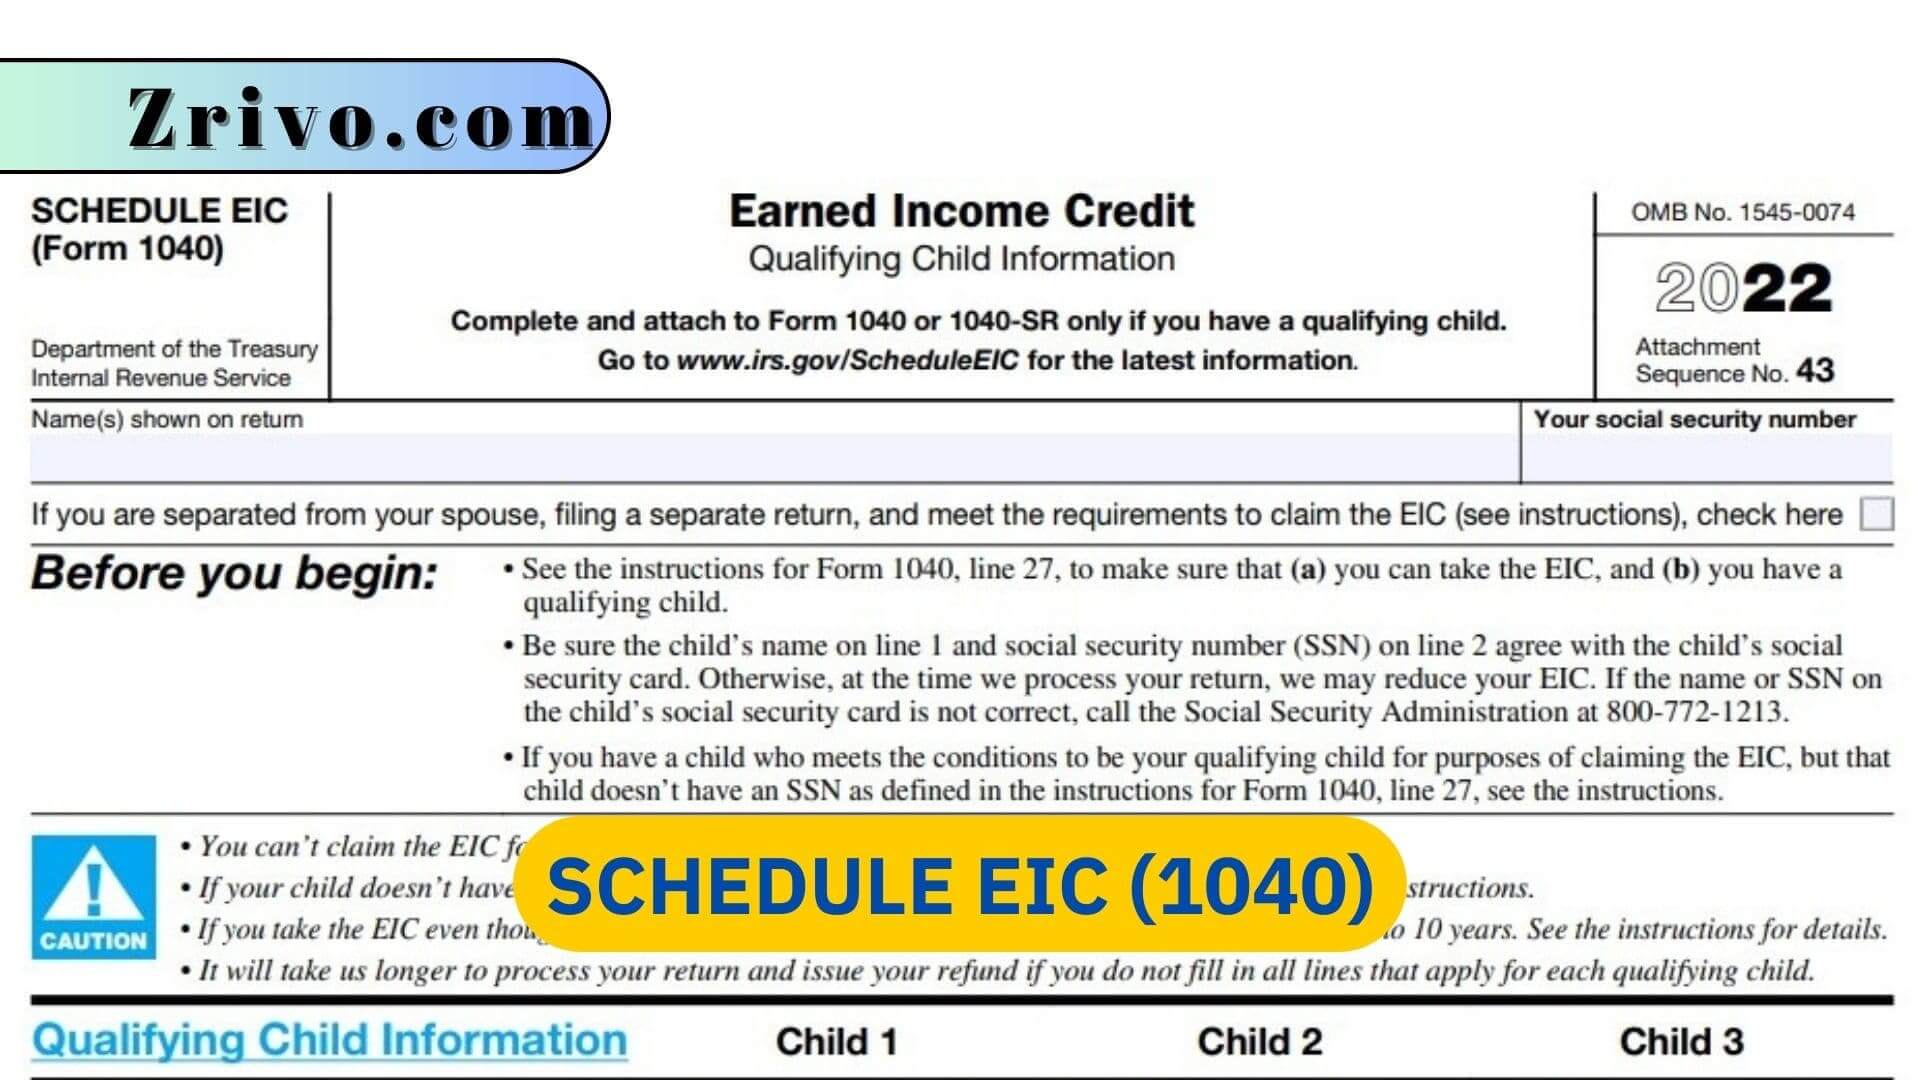 Schedule EIC (1040)